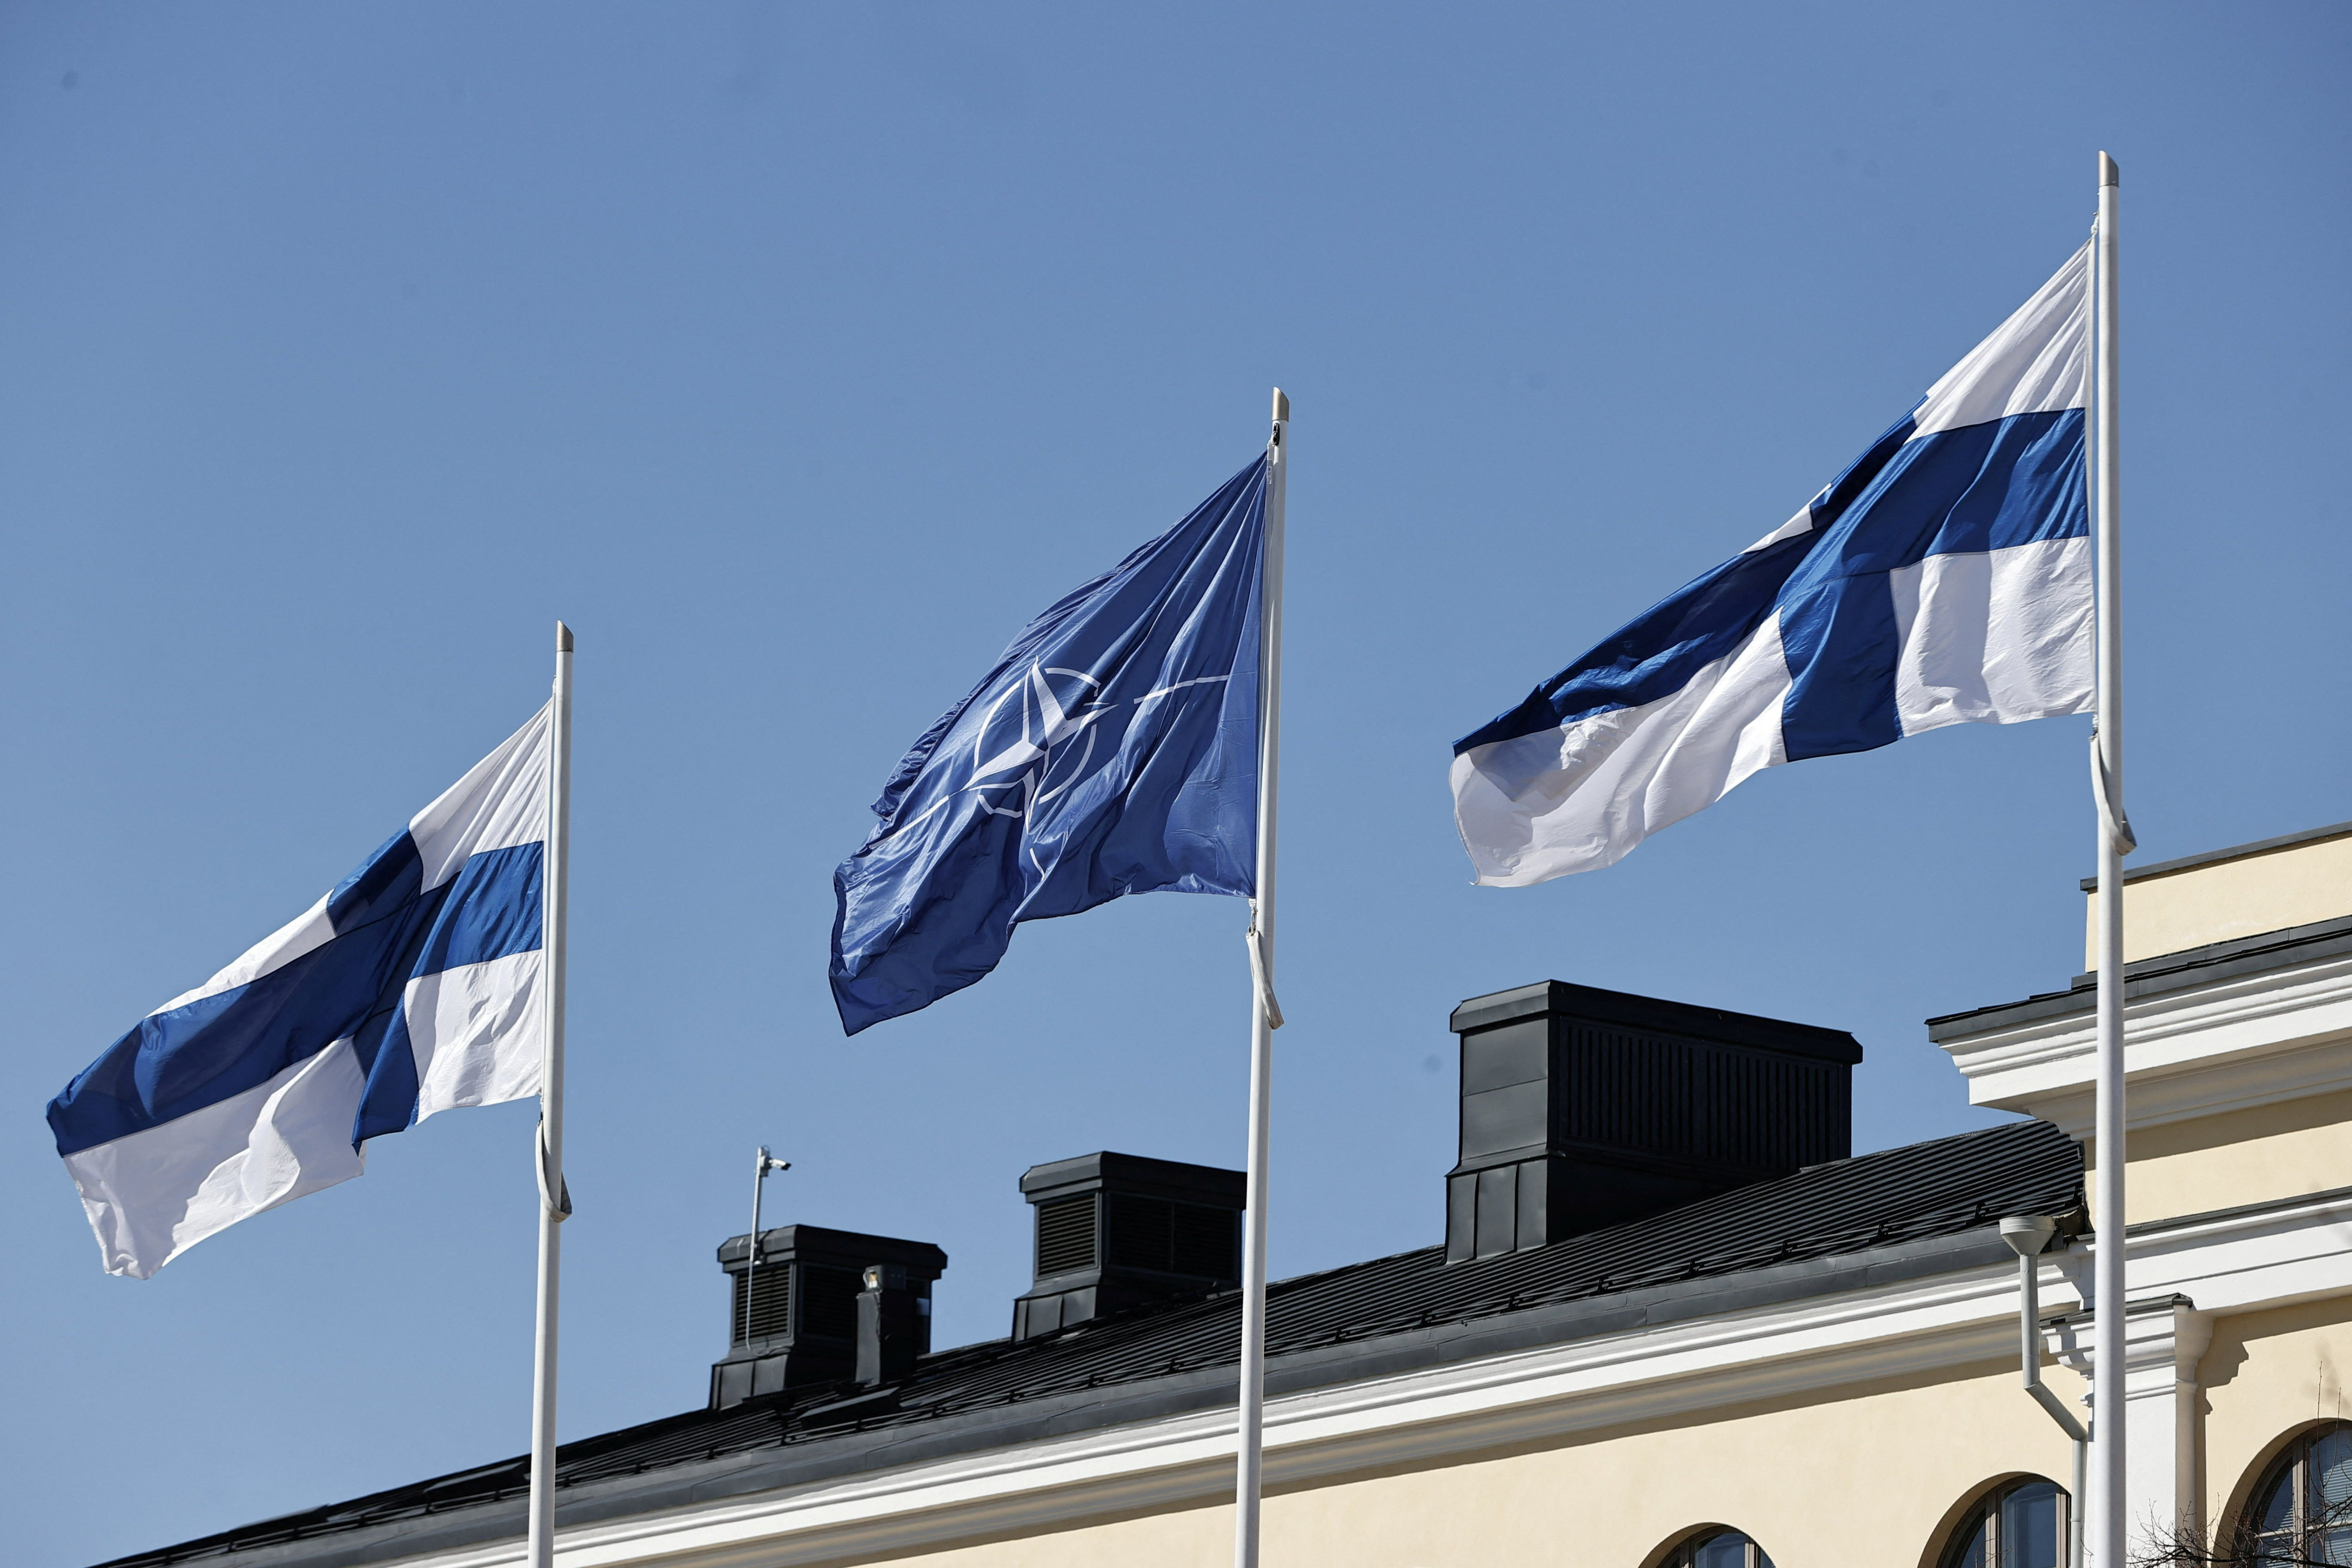 Steagul finlandez și NATO flutură în curtea Ministerului Afacerilor Externe din Helsinki